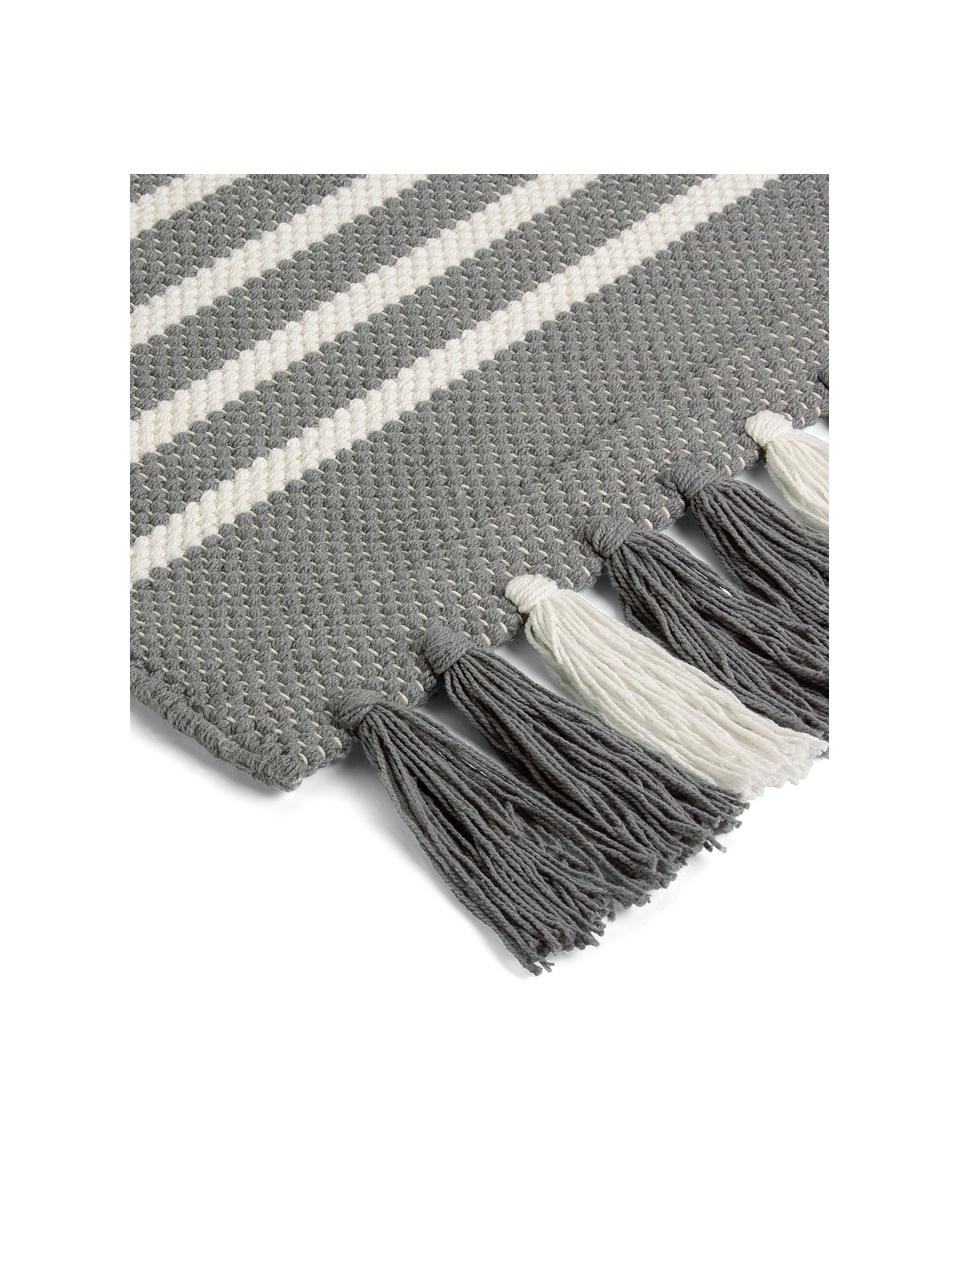 Gestreifter Badvorleger Stripes & Structure mit Fransenabschluss, 100% Baumwolle, Grau, gebrochenes Weiß, B 60 x L 100 cm